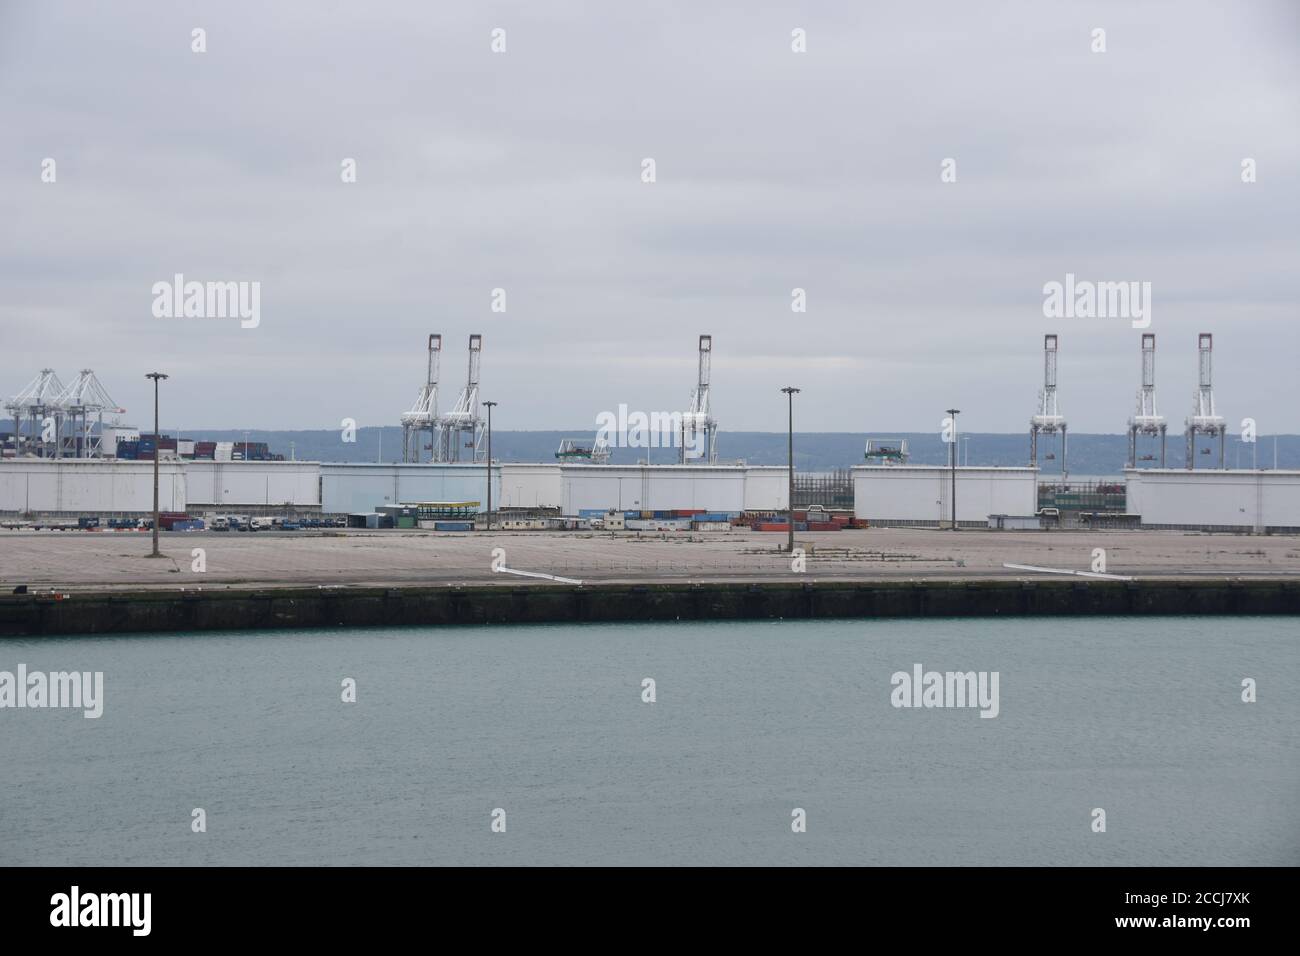 Leerer Hafen Le Havre in Frankreich mit hochgedrehten Portalkranen ohne Bewegung aufgrund des reduzierten Verkehrs im Hafen durch Coronavirus, COVID-19. Stockfoto